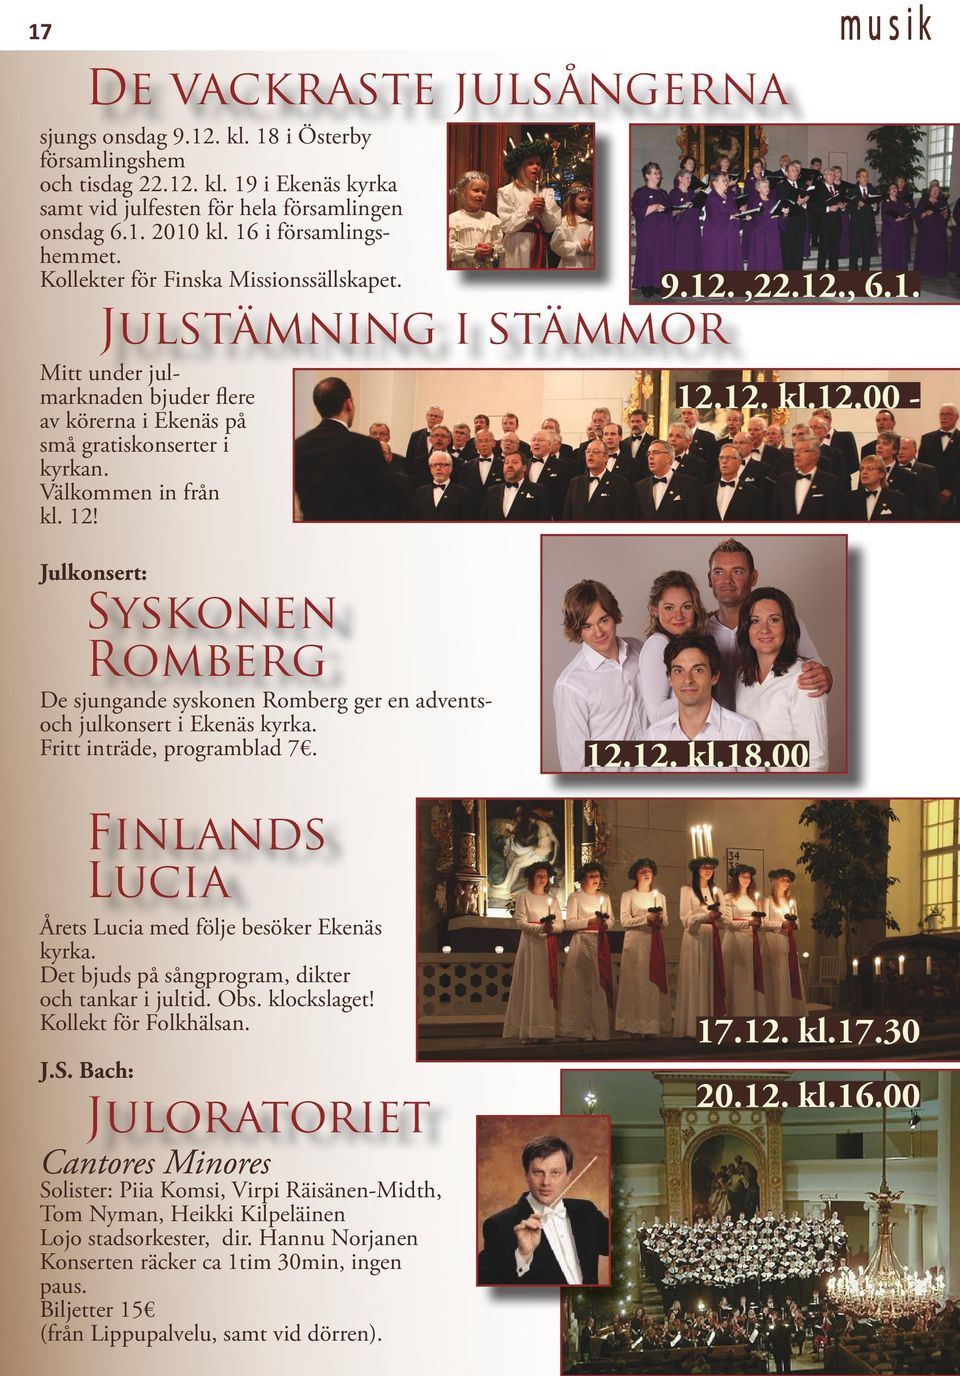 12! musik 9.12.,22.12., 6.1. 12.12. kl.12.00 - Julkonsert: Syskonen Romberg De sjungande syskonen Romberg ger en adventsoch julkonsert i Ekenäs kyrka. Fritt inträde, programblad 7.